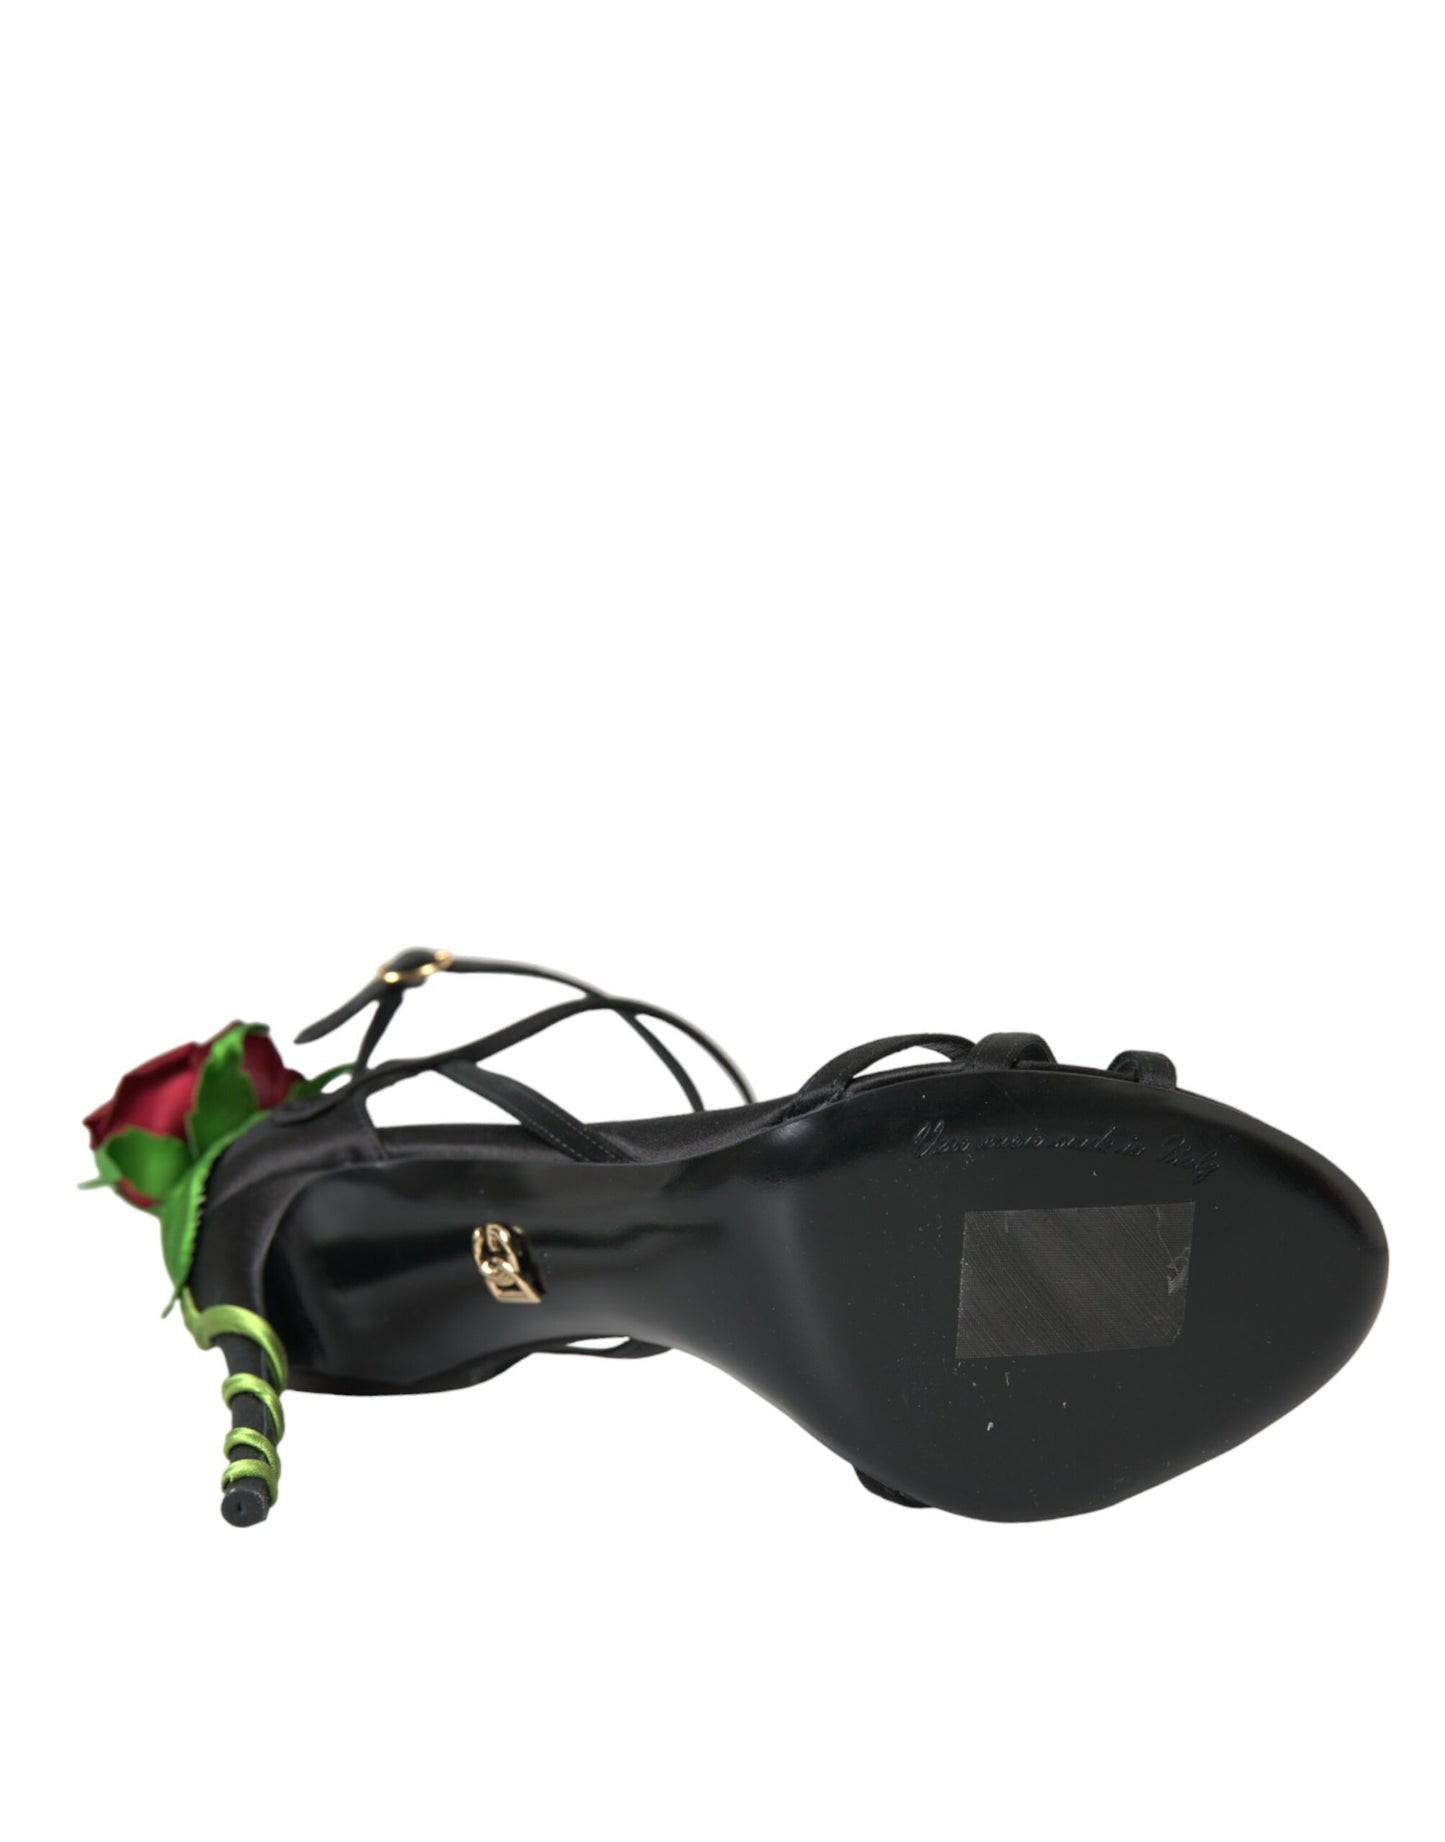 Black Flower Satin Heels Sandals Shoes